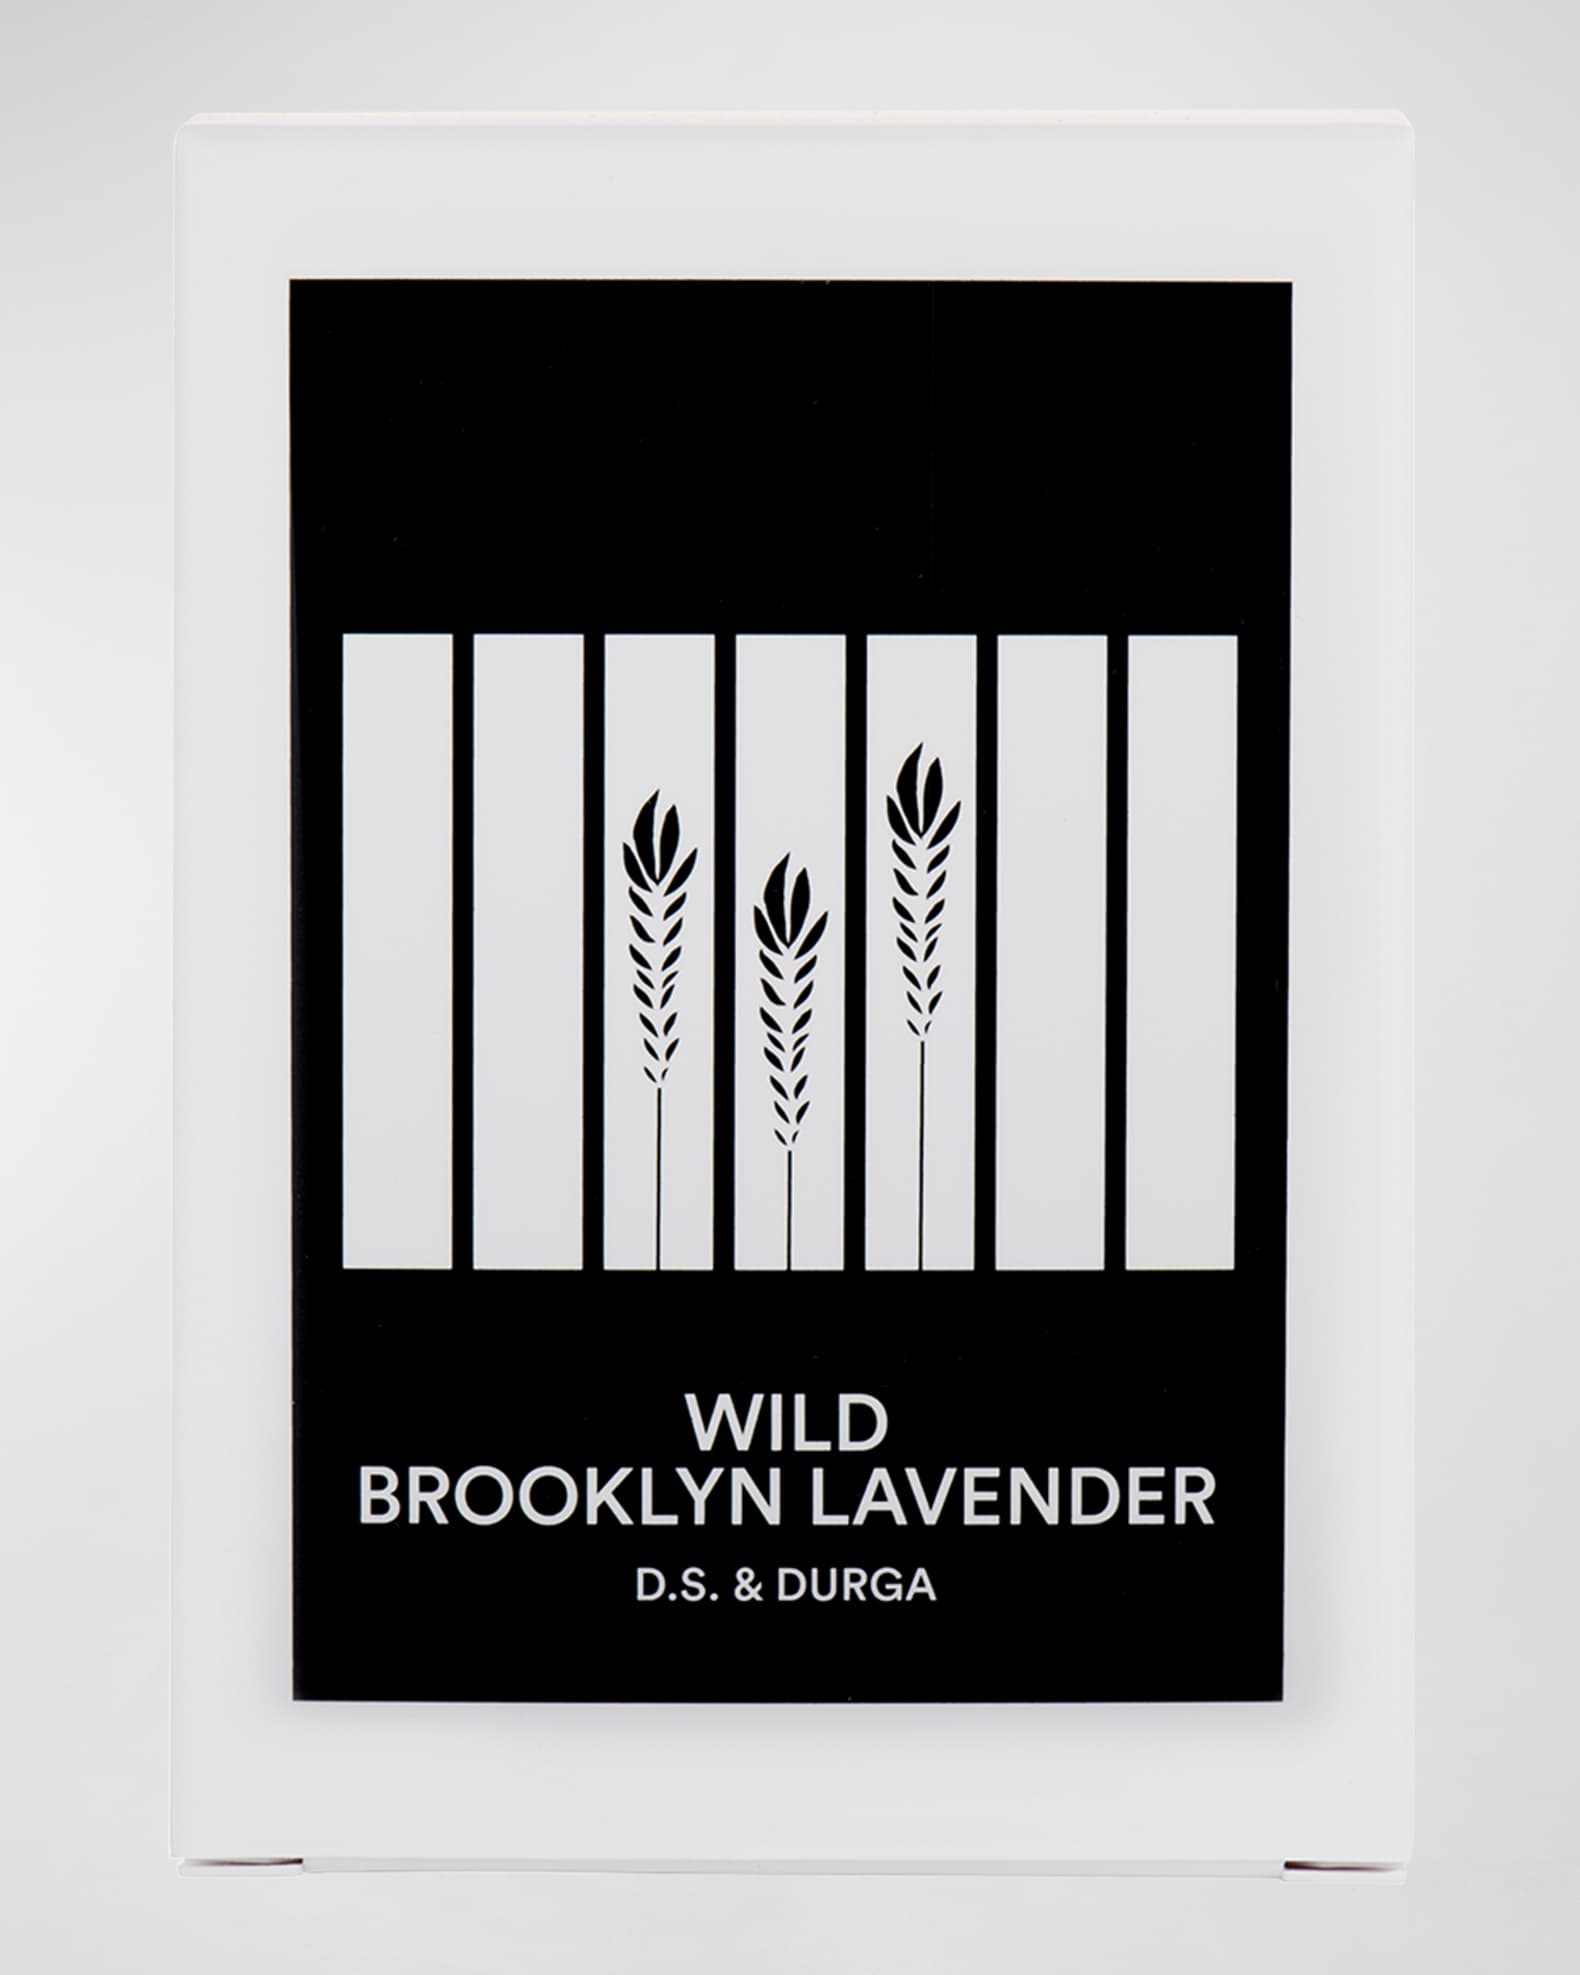 7 oz. Wild Brooklyn Lavender Candle